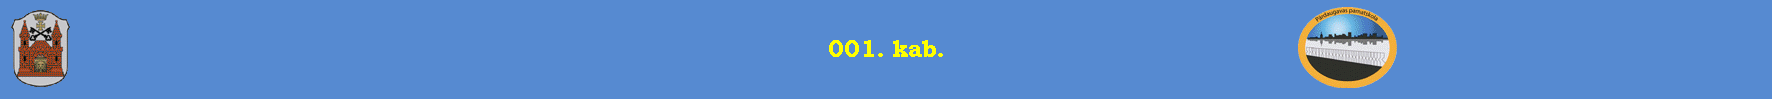 001. kab.